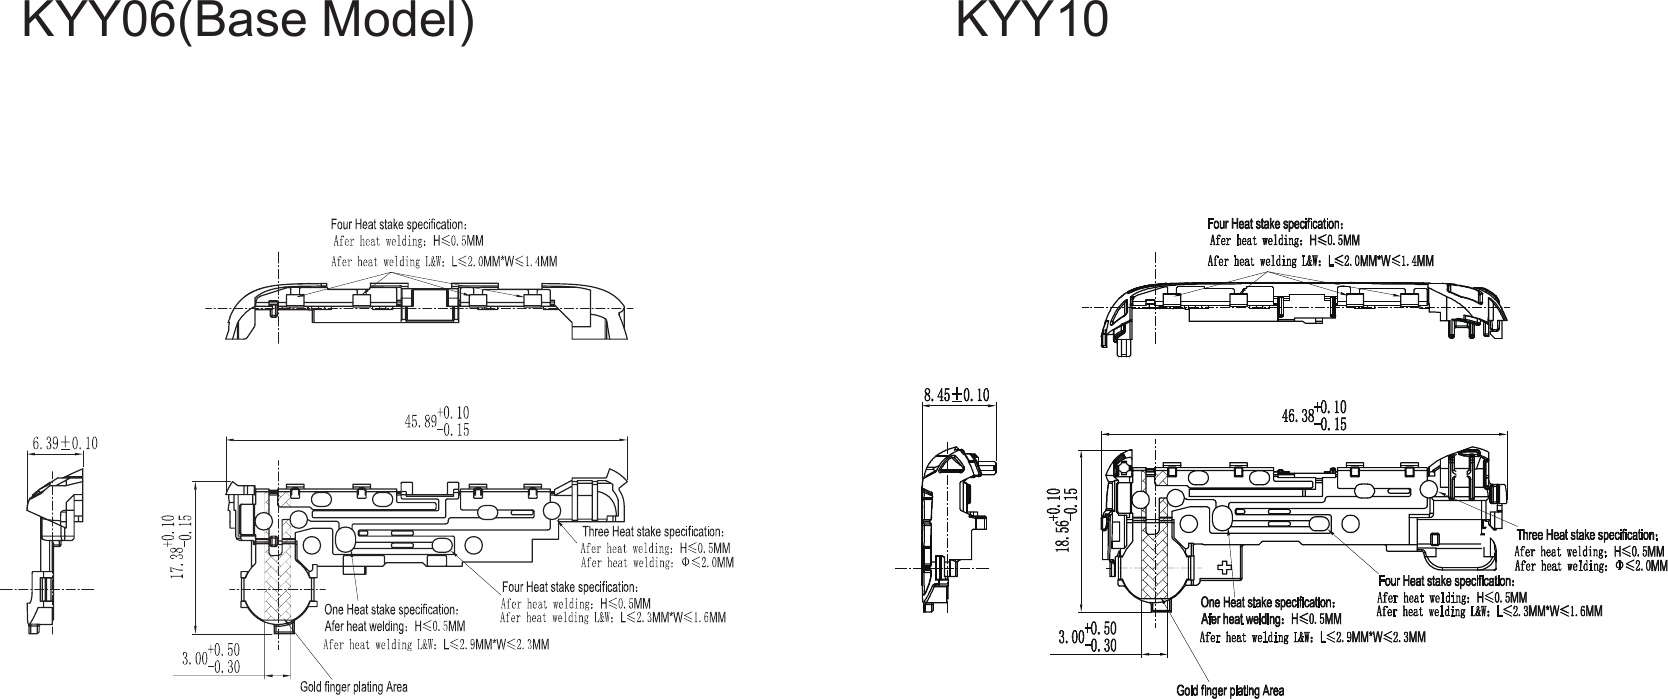 KYY10KYY06(Base Model)